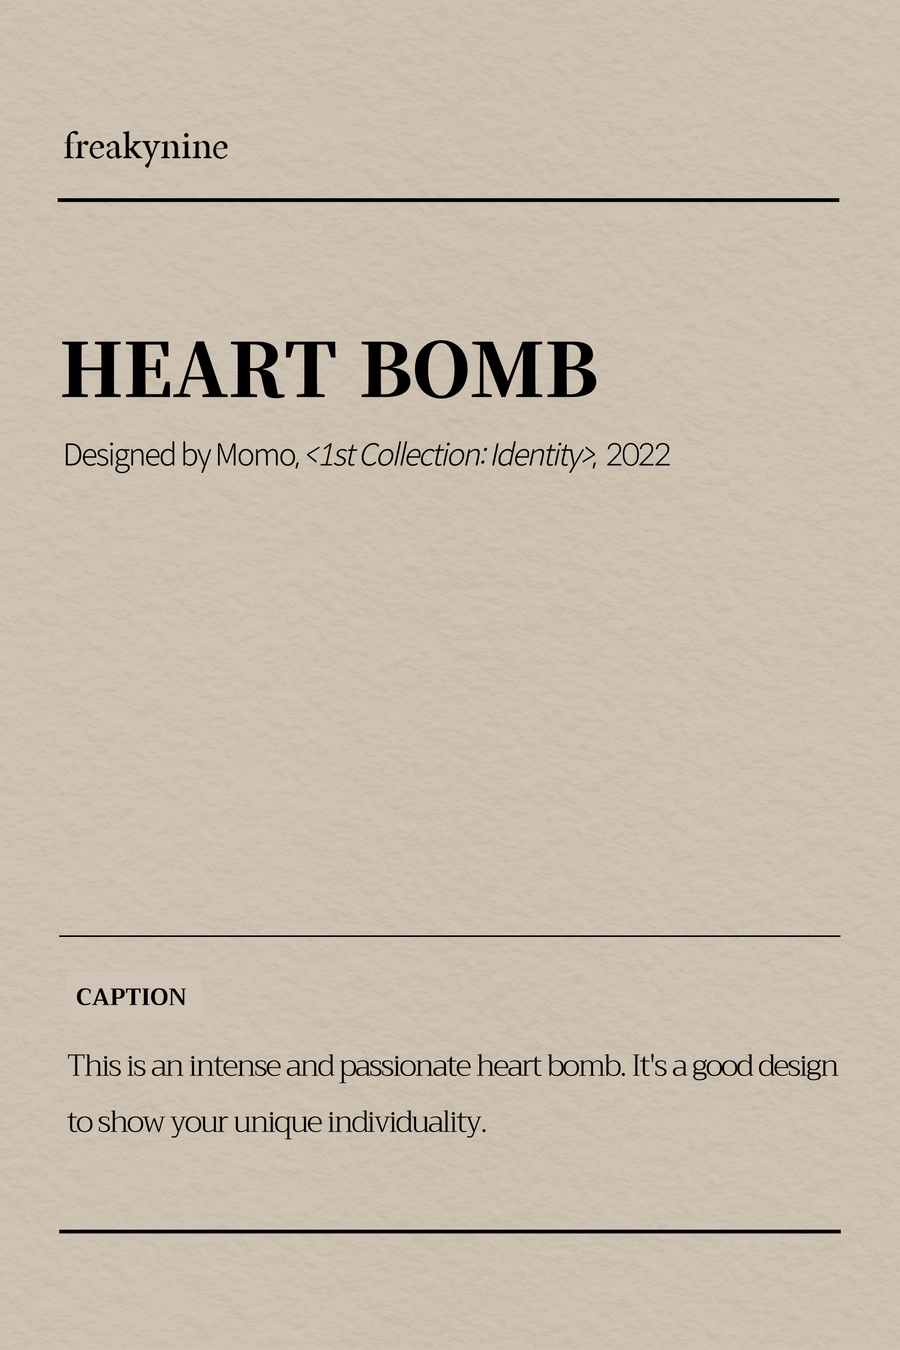 (Momo) HEART BOMB (2EA) - freakynine